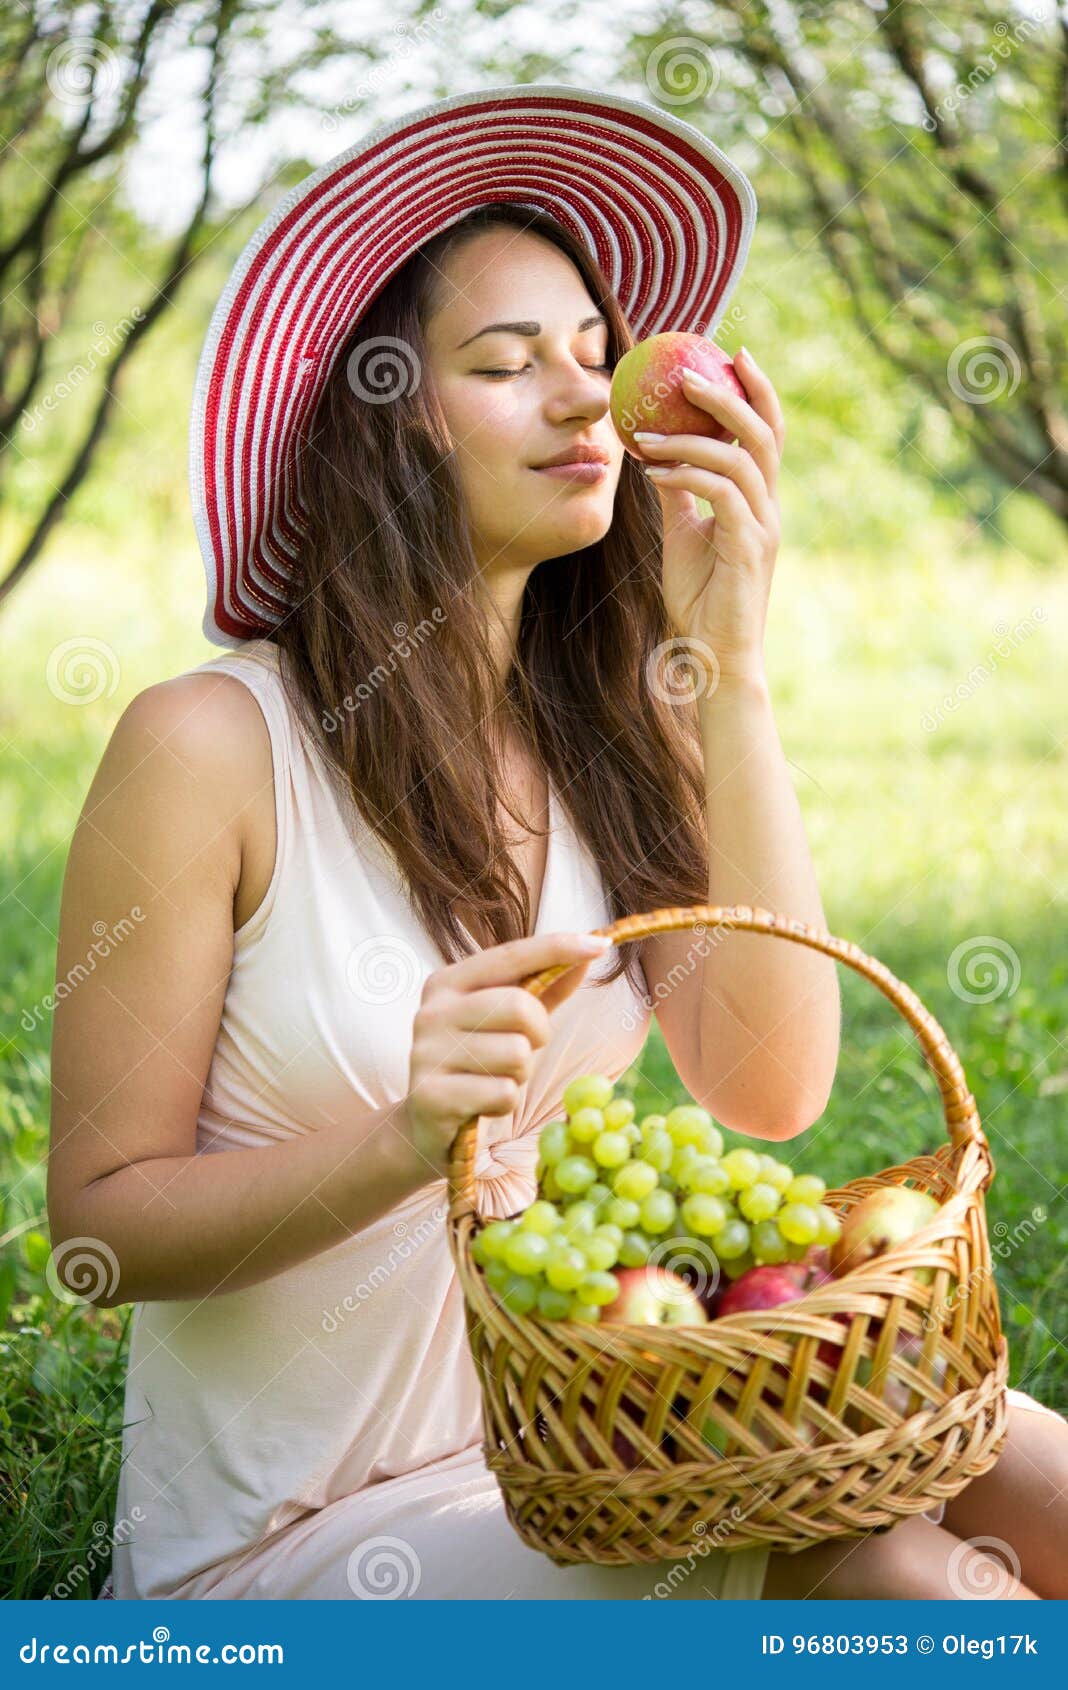 Запах яблок какой. Девушка в шляпе с яблоком. Девушка сидит с корзинкой яблок. Запах яблока. Девушка с корзиной фруктов.